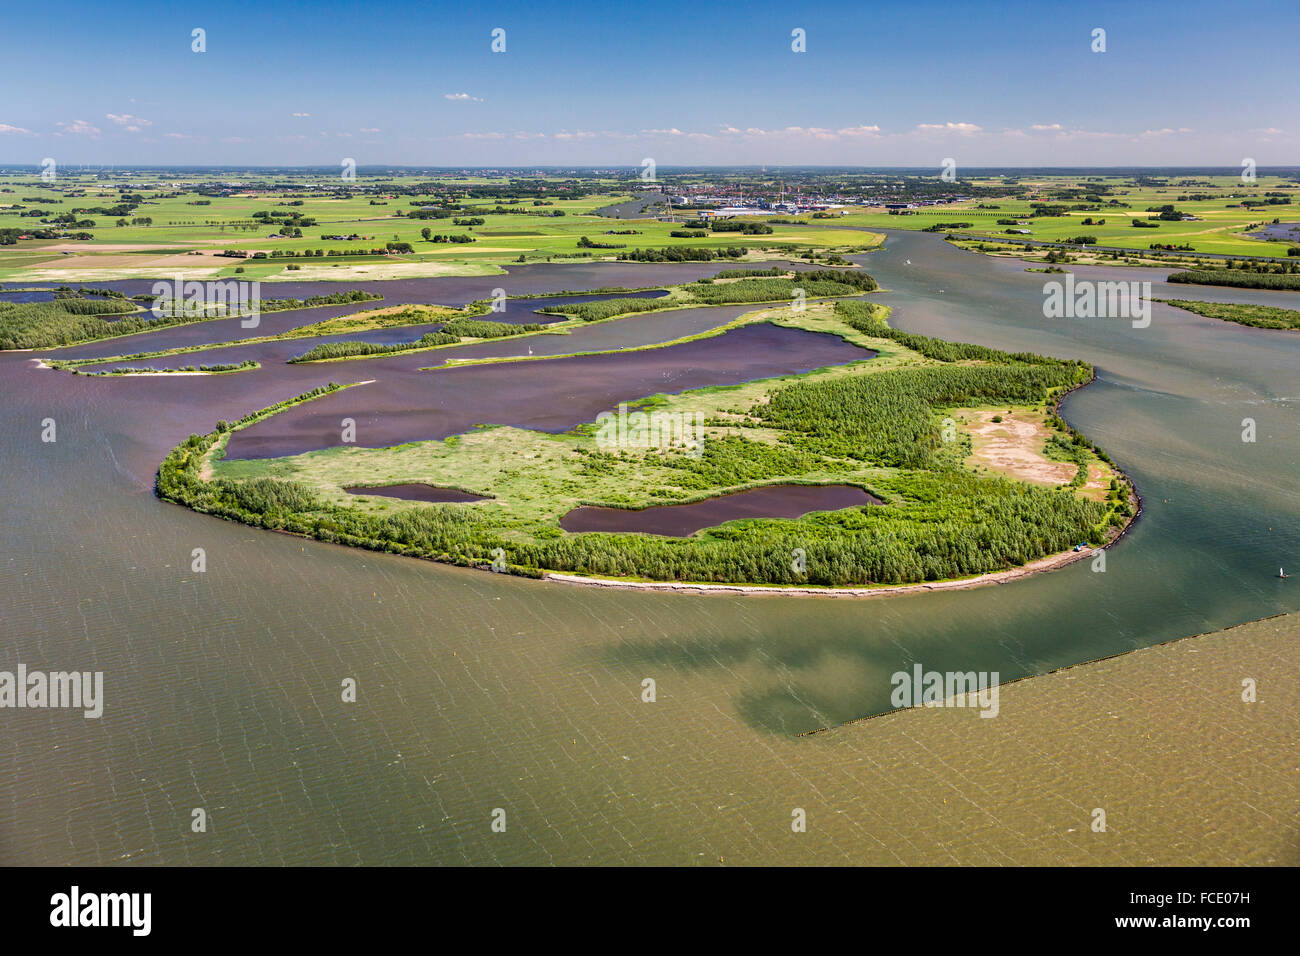 Niederlande, Kampen, Hügel der IJssel Fluss in See genannt Ketelmeer. Naturschutzgebiet IJsselmoding. Luftbild Stockfoto